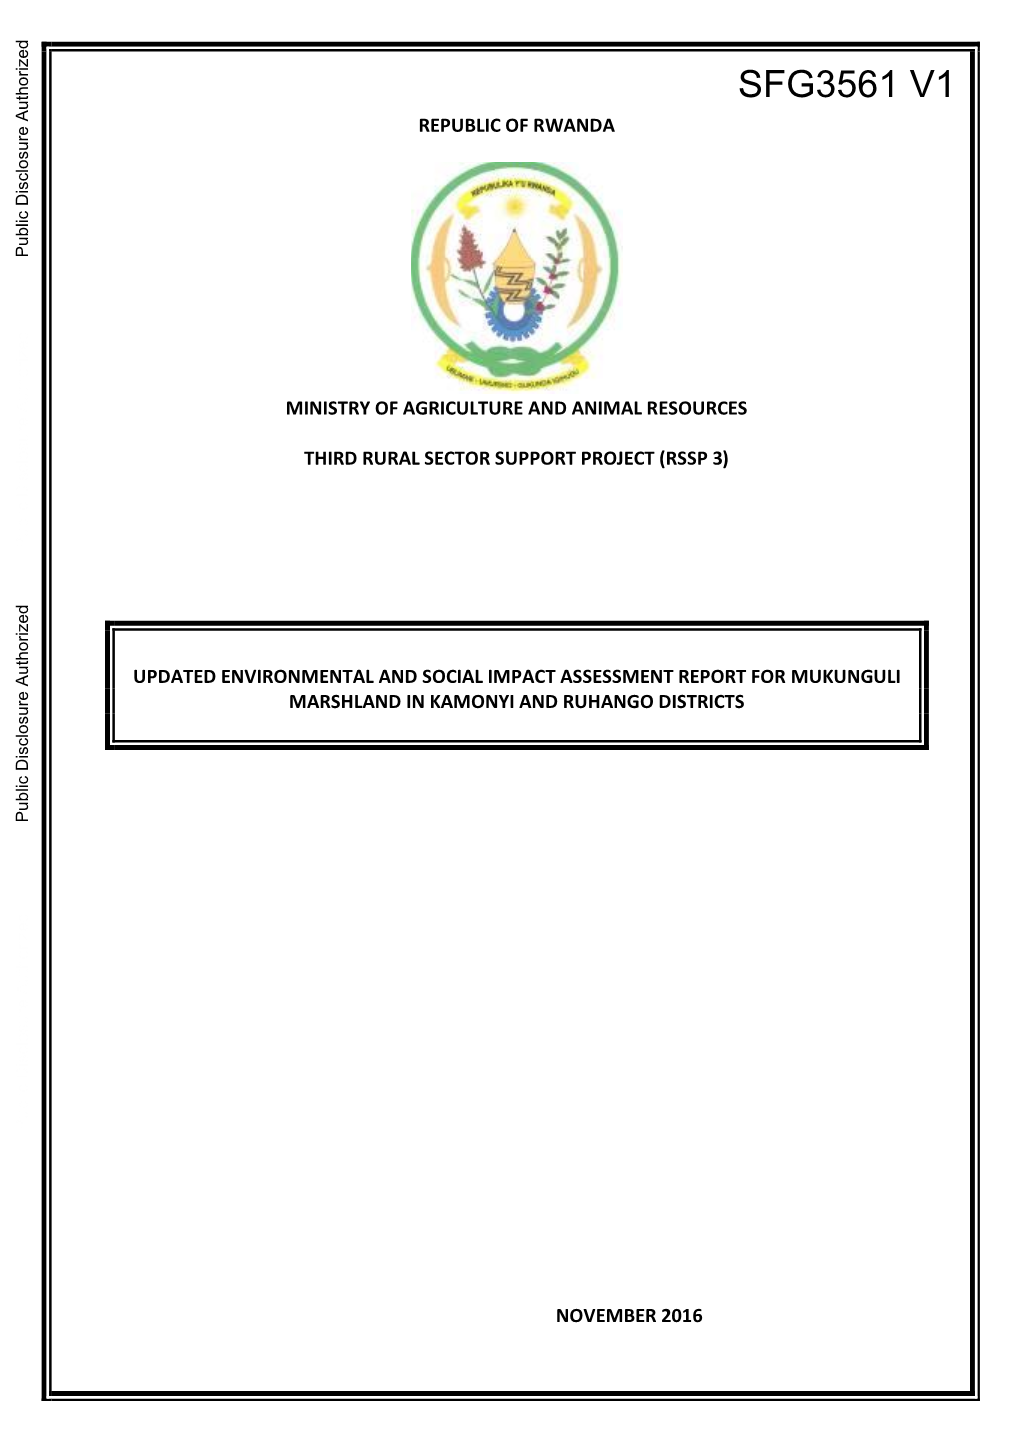 SFG3561 V1 REPUBLIC of RWANDA Public Disclosure Authorized